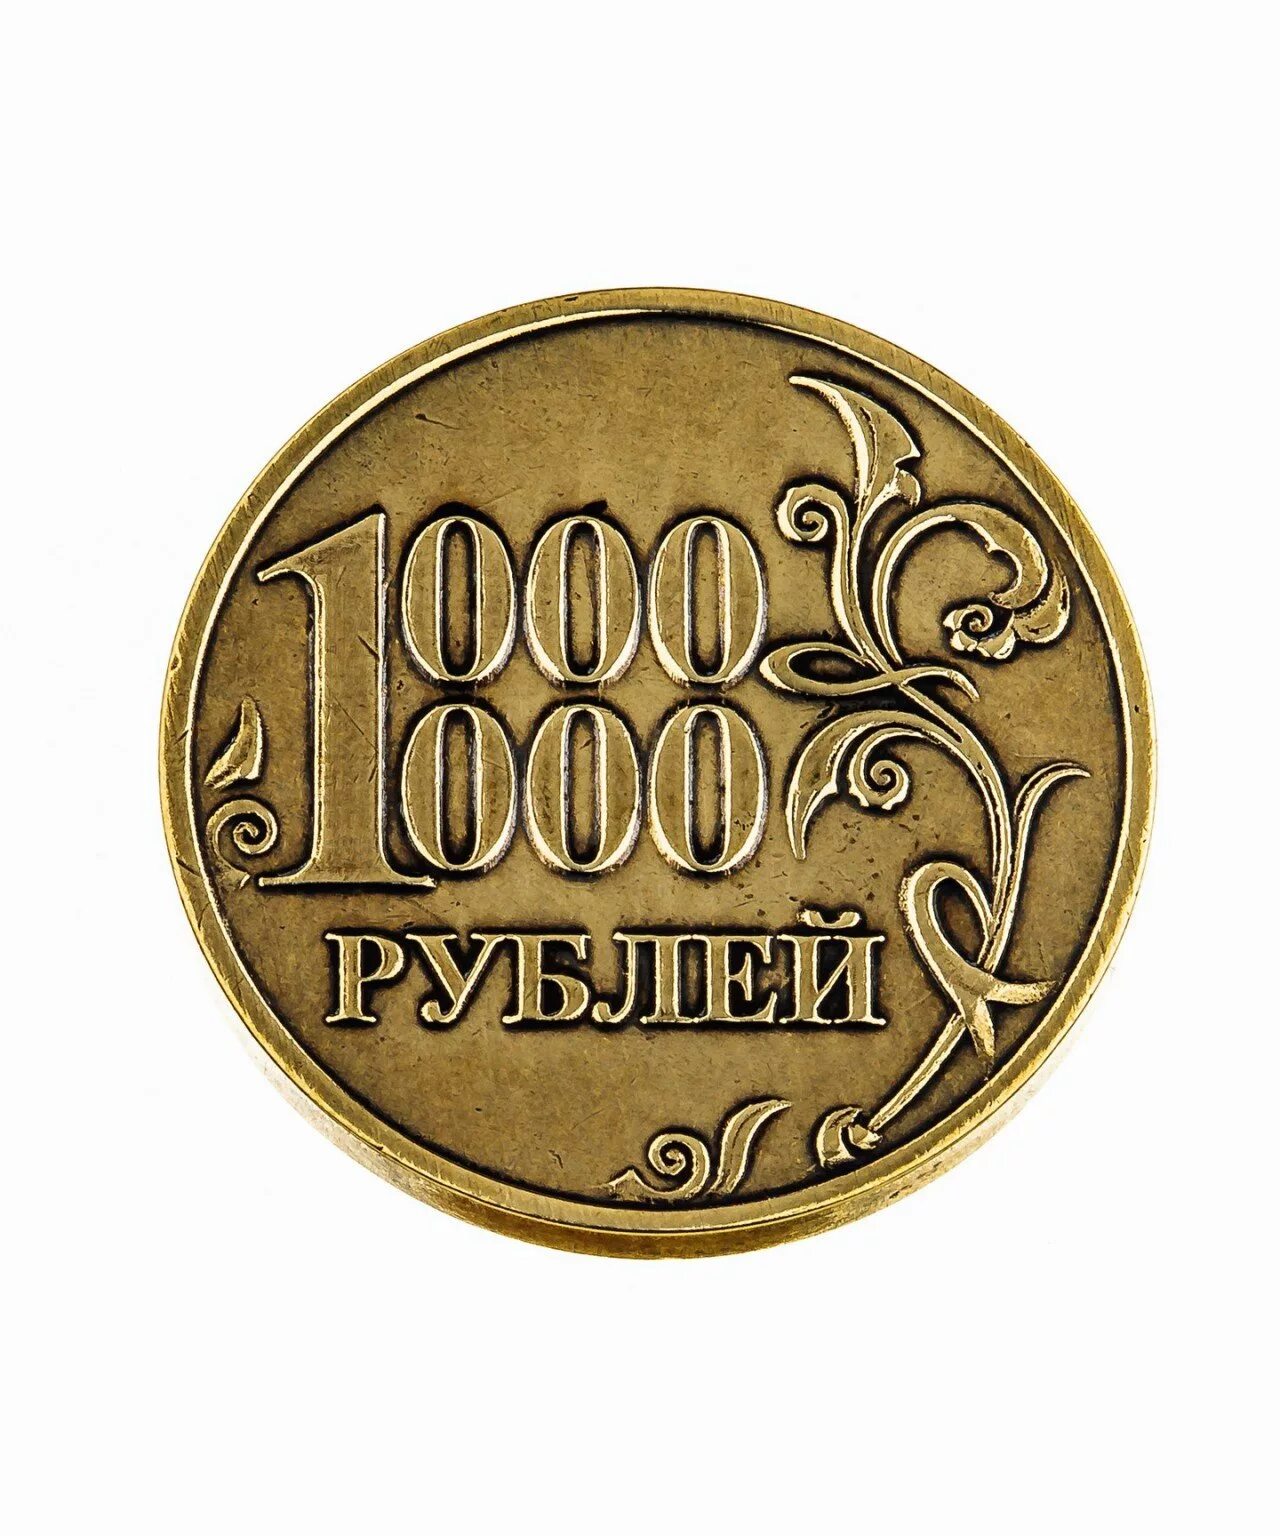 Кредит 1 миллион рублей на 10 лет. Монета миллион рублей. Монета 1 милион рубле й. Сонета 1 миллион рублей. Монета 1 миллион рублей.